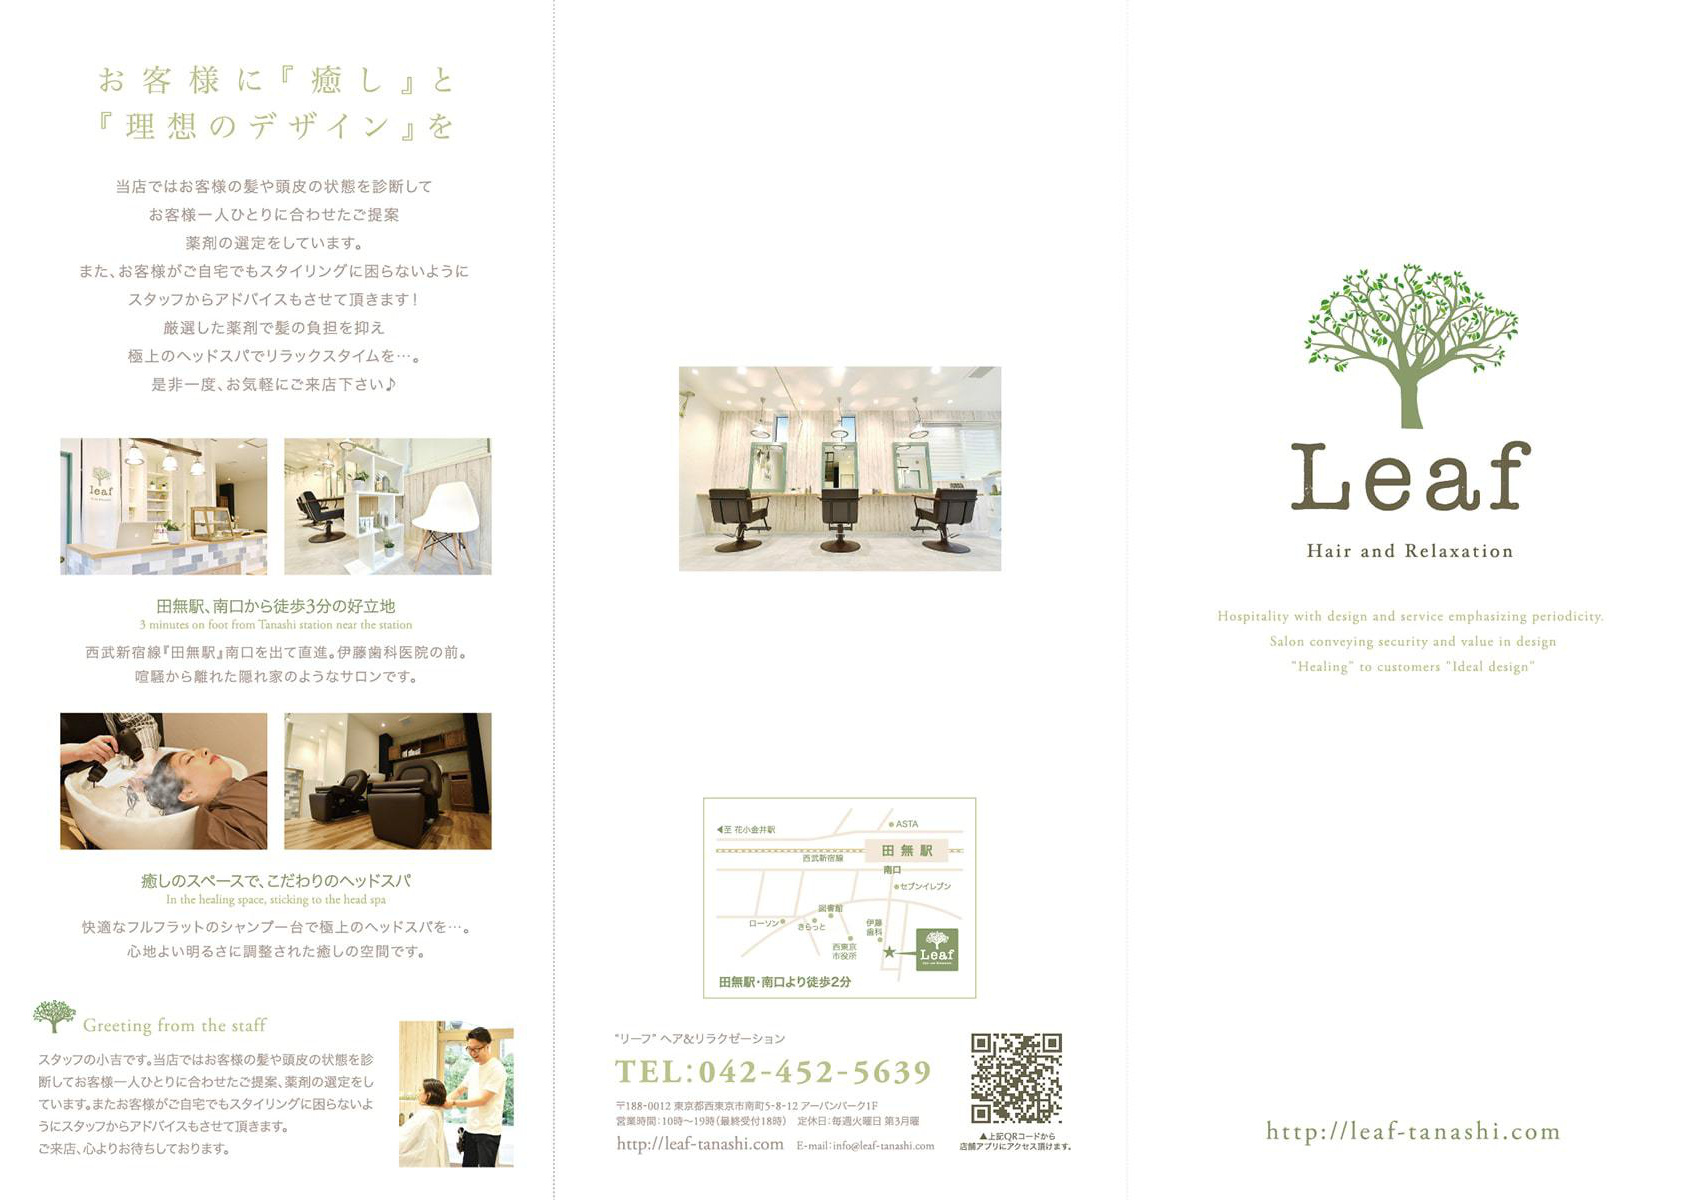 美容室『Leaf』様のリーフレット（折りパンフレット）画像